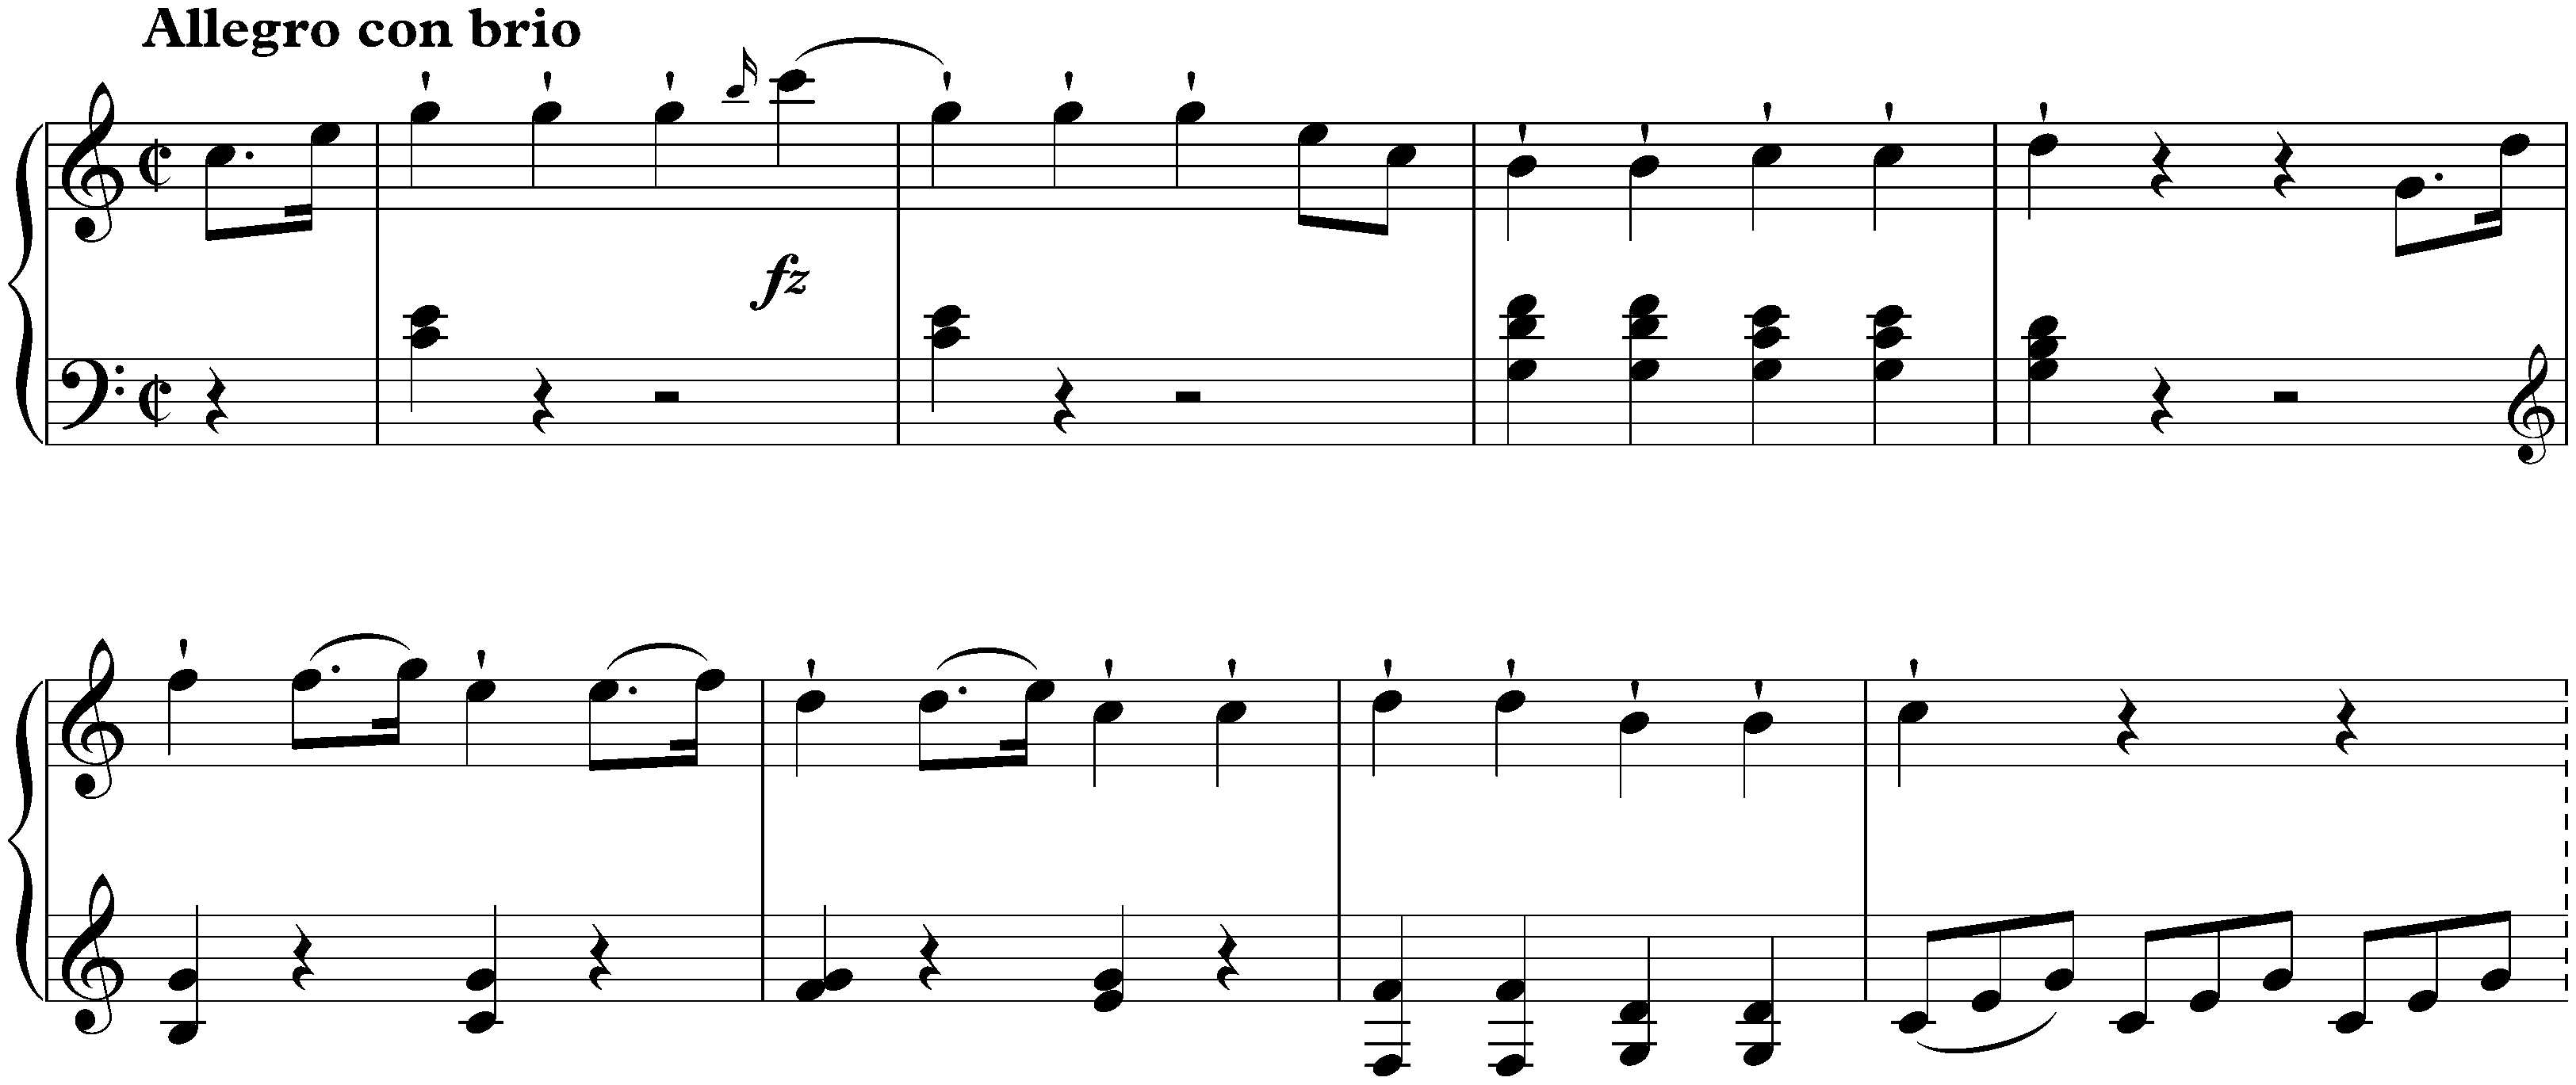 Sonata in C major, Hob. XVI:35; 1. Allegro con brio